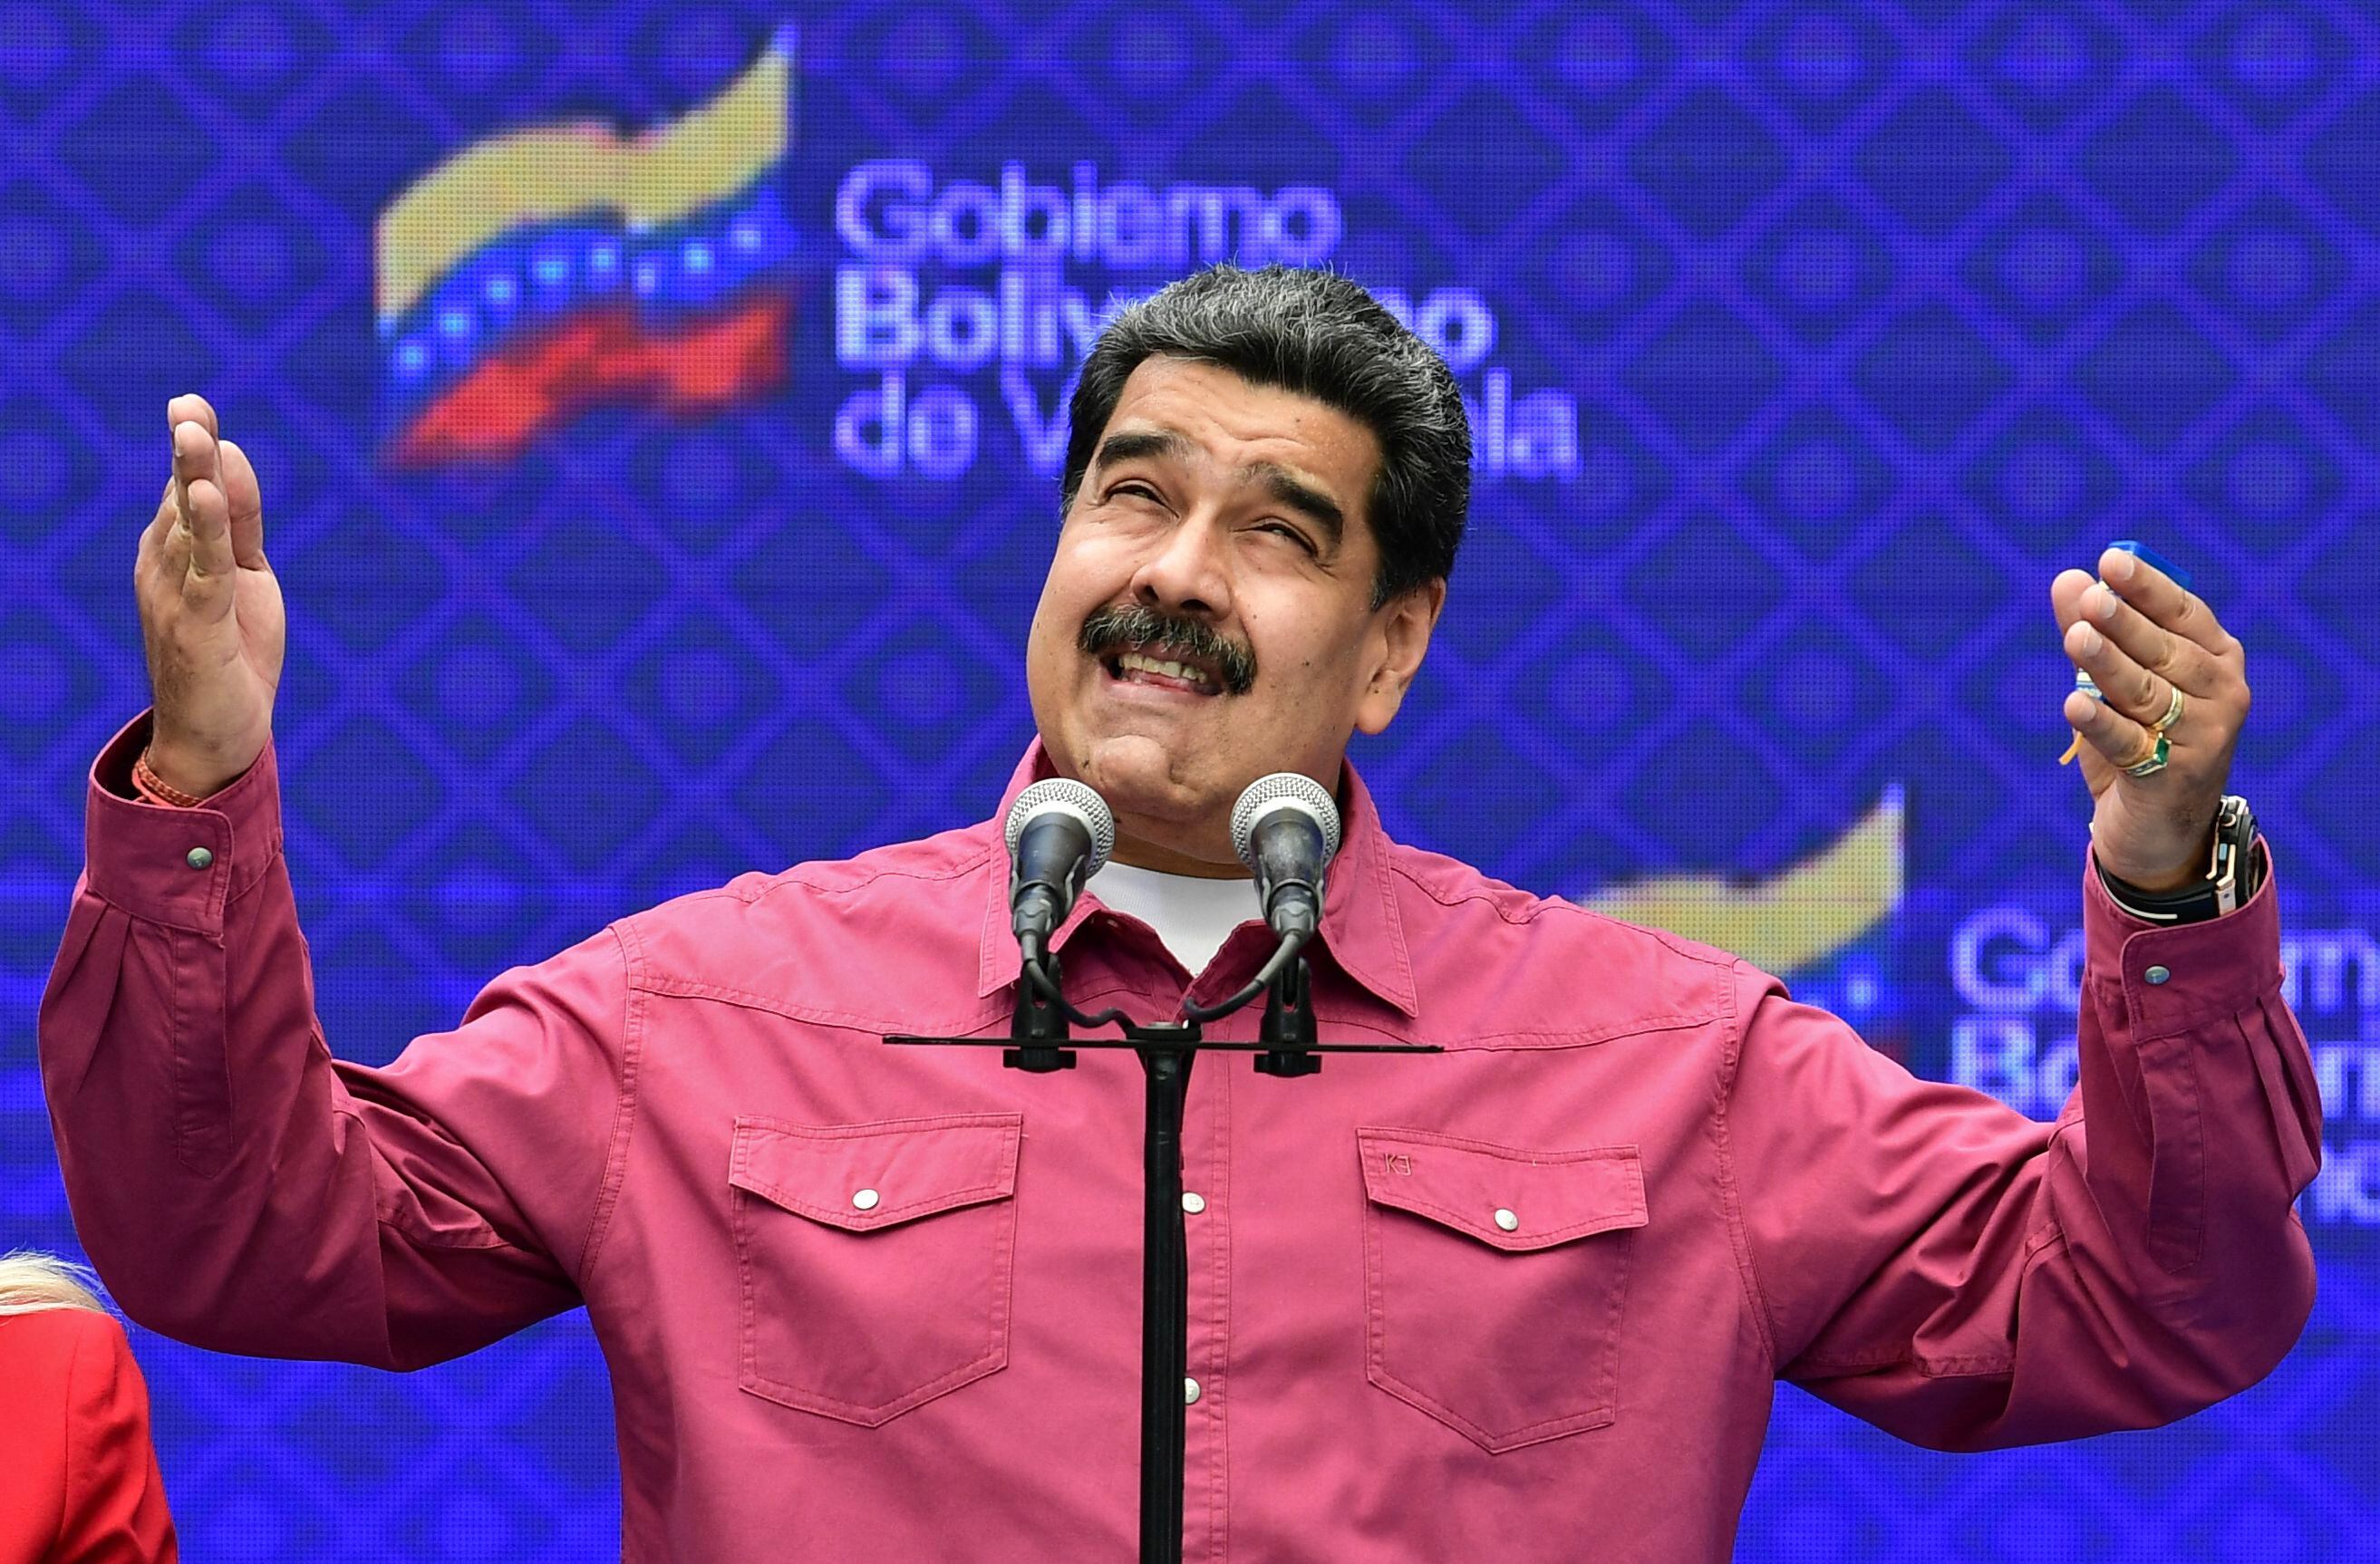 La administración del presidente Joe Biden dijo que los activos del gobierno venezolano en los Estados Unidos, en particular de la compañía petrolera estatal, permanecerían legalmente bajo la autoridad de la Asamblea Nacional liderada por la oposición, que fue elegida en 2015 pero que el gobierno de izquierda de Maduro le quitó el poder.